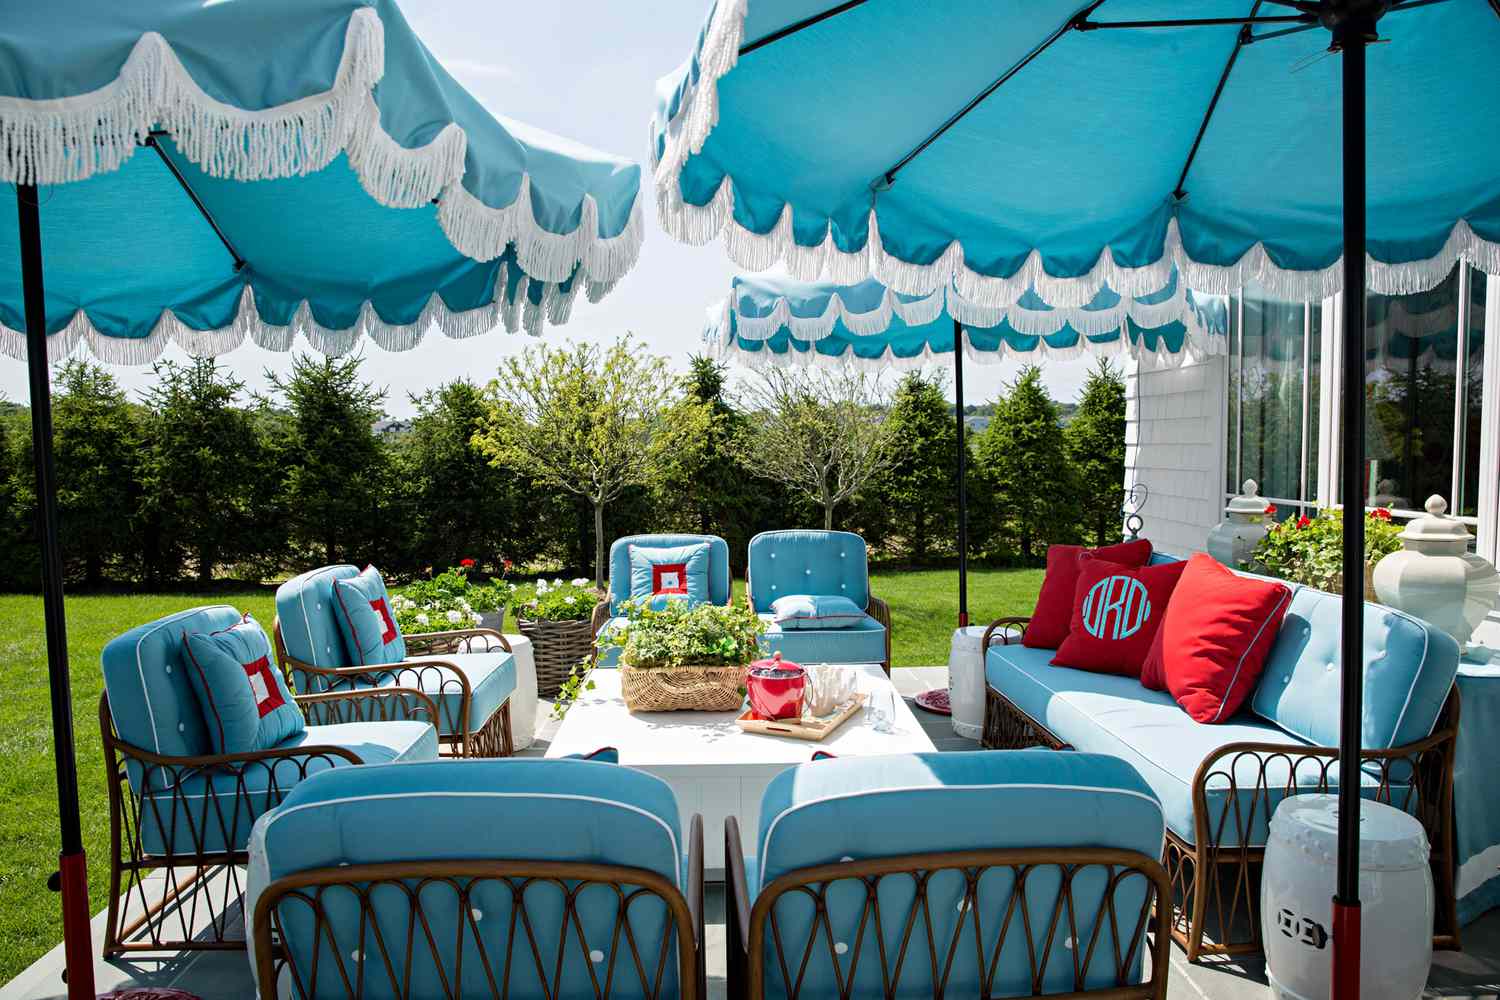 blue patio furniture and umbrellas